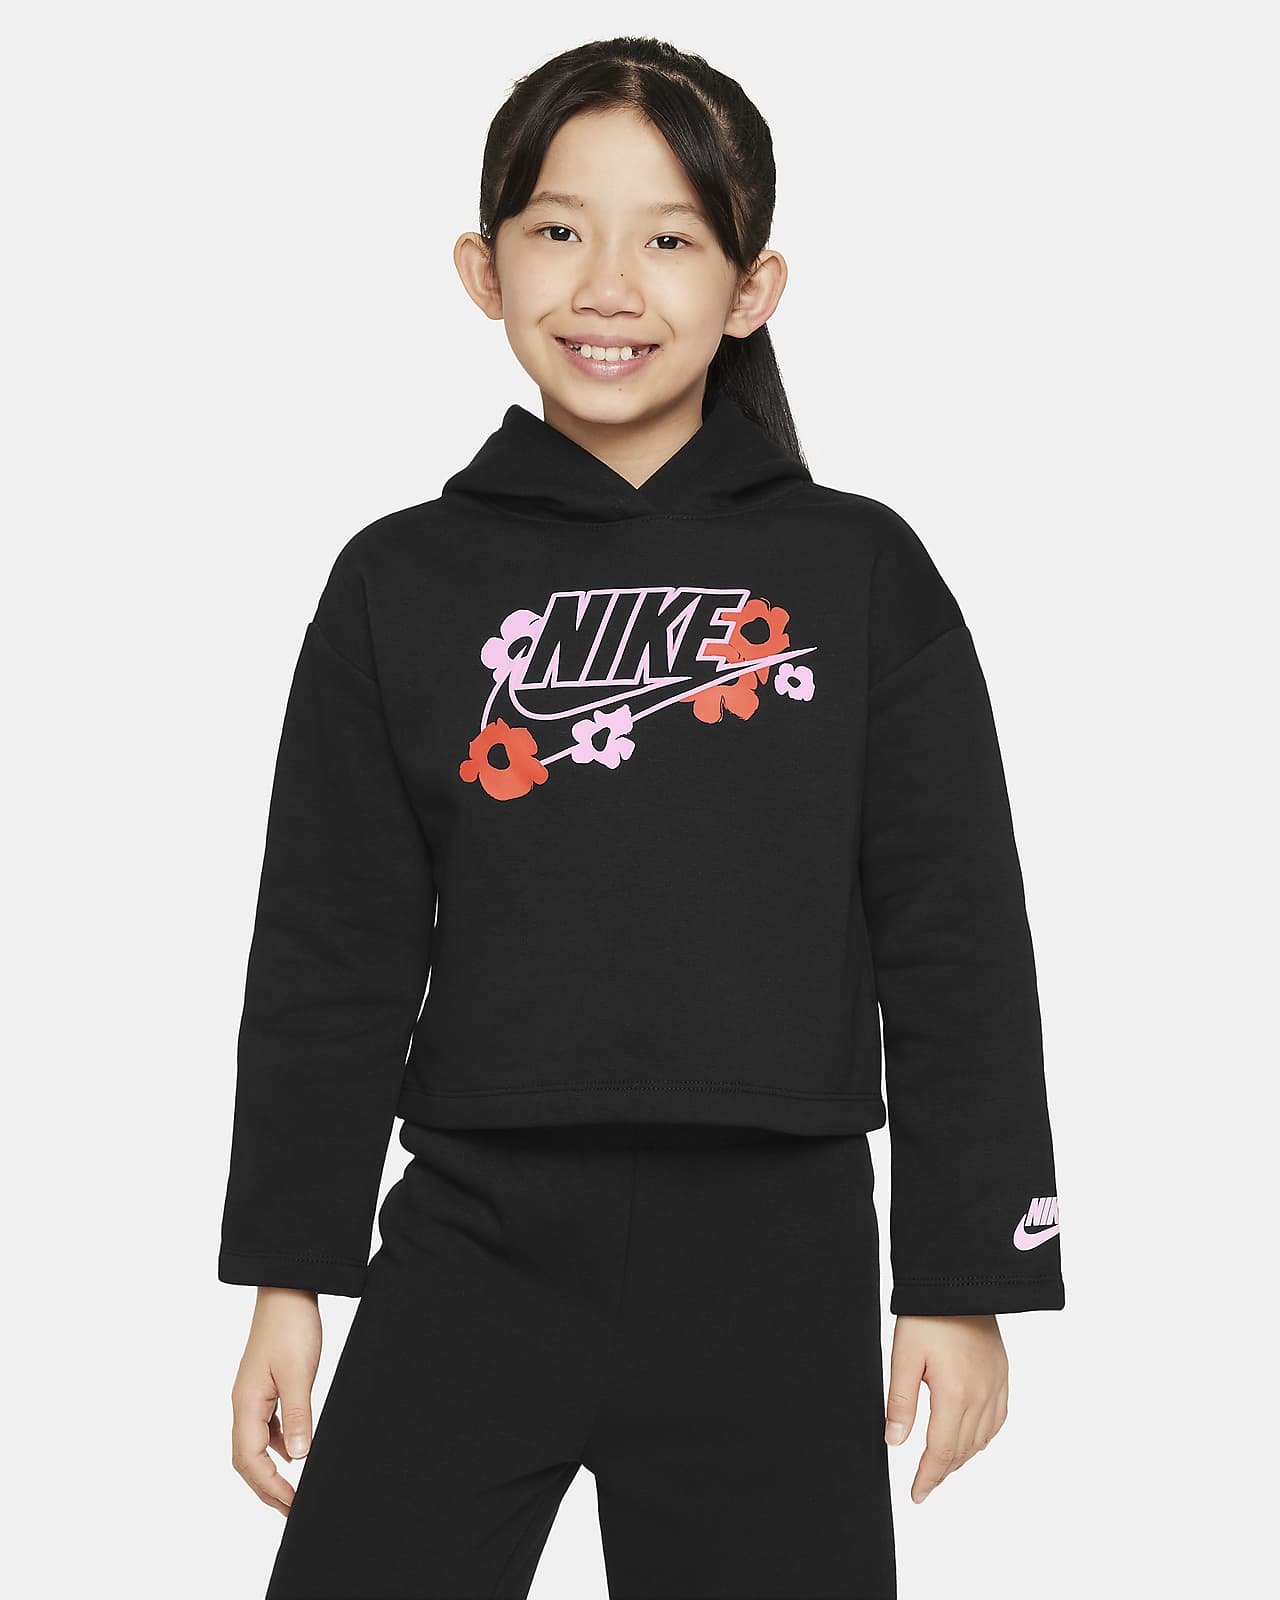 Μπλούζα με κουκούλα και σχέδιο Nike Floral για μικρά παιδιά